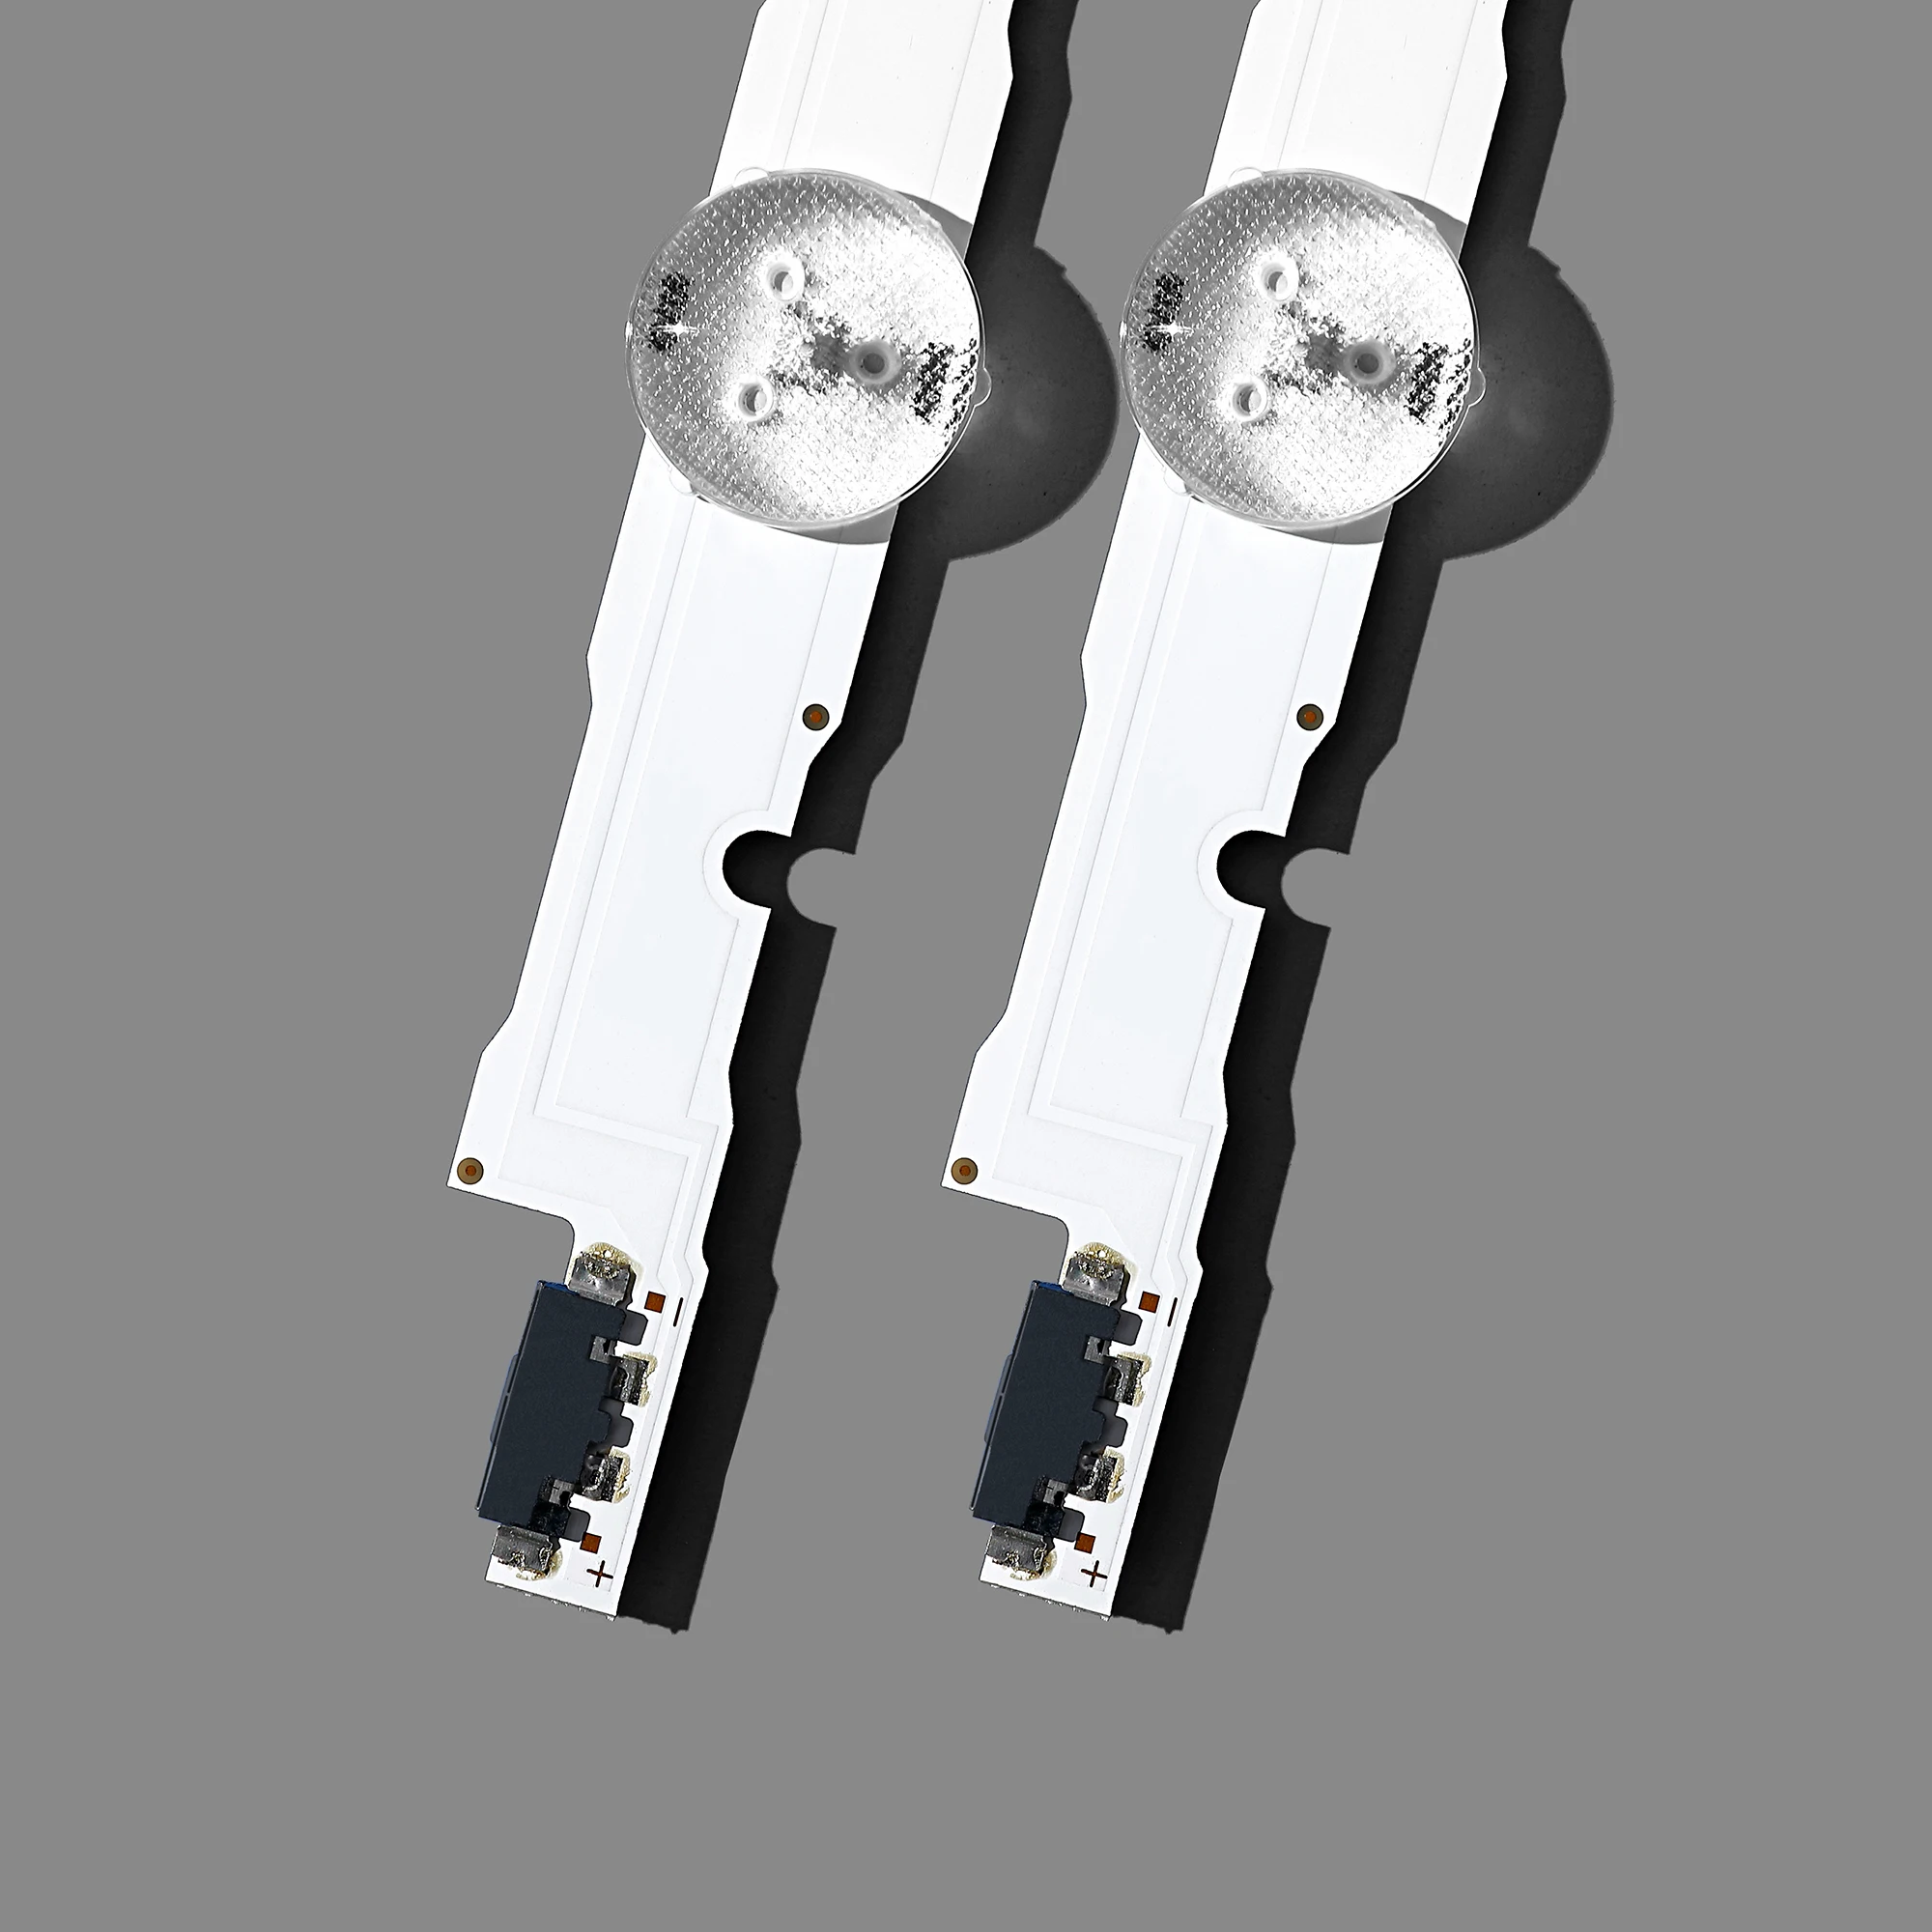 12 PCS/set LED backlight strip for Samsung UE48H6400 UE48J5600 UE48J5600 UE48H5000 UE48H5500 UE48H6200AK D4GE-480DCA 480DCB-R3